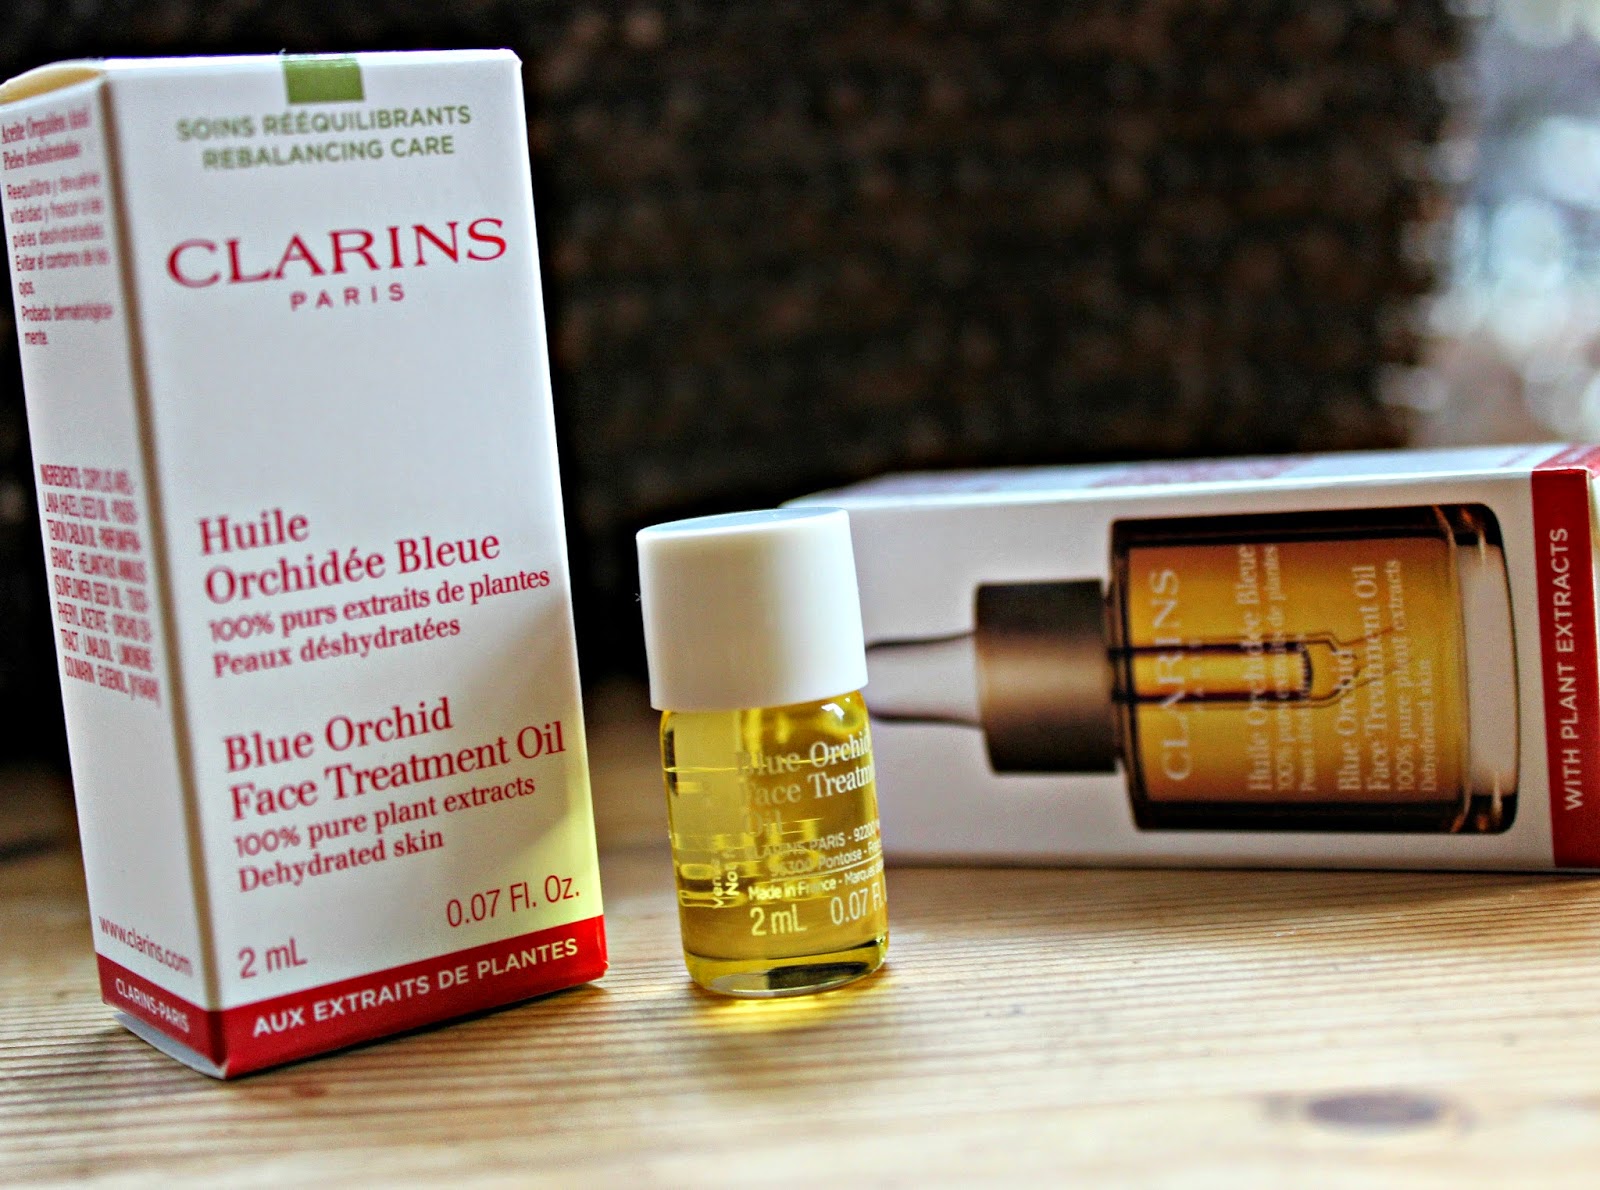 à¸à¸¥à¸à¸²à¸£à¸à¹à¸à¸«à¸²à¸£à¸¹à¸à¸�à¸²à¸à¸ªà¸³à¸«à¸£à¸±à¸ Clarins Blue Orchid Face Treatment Oil